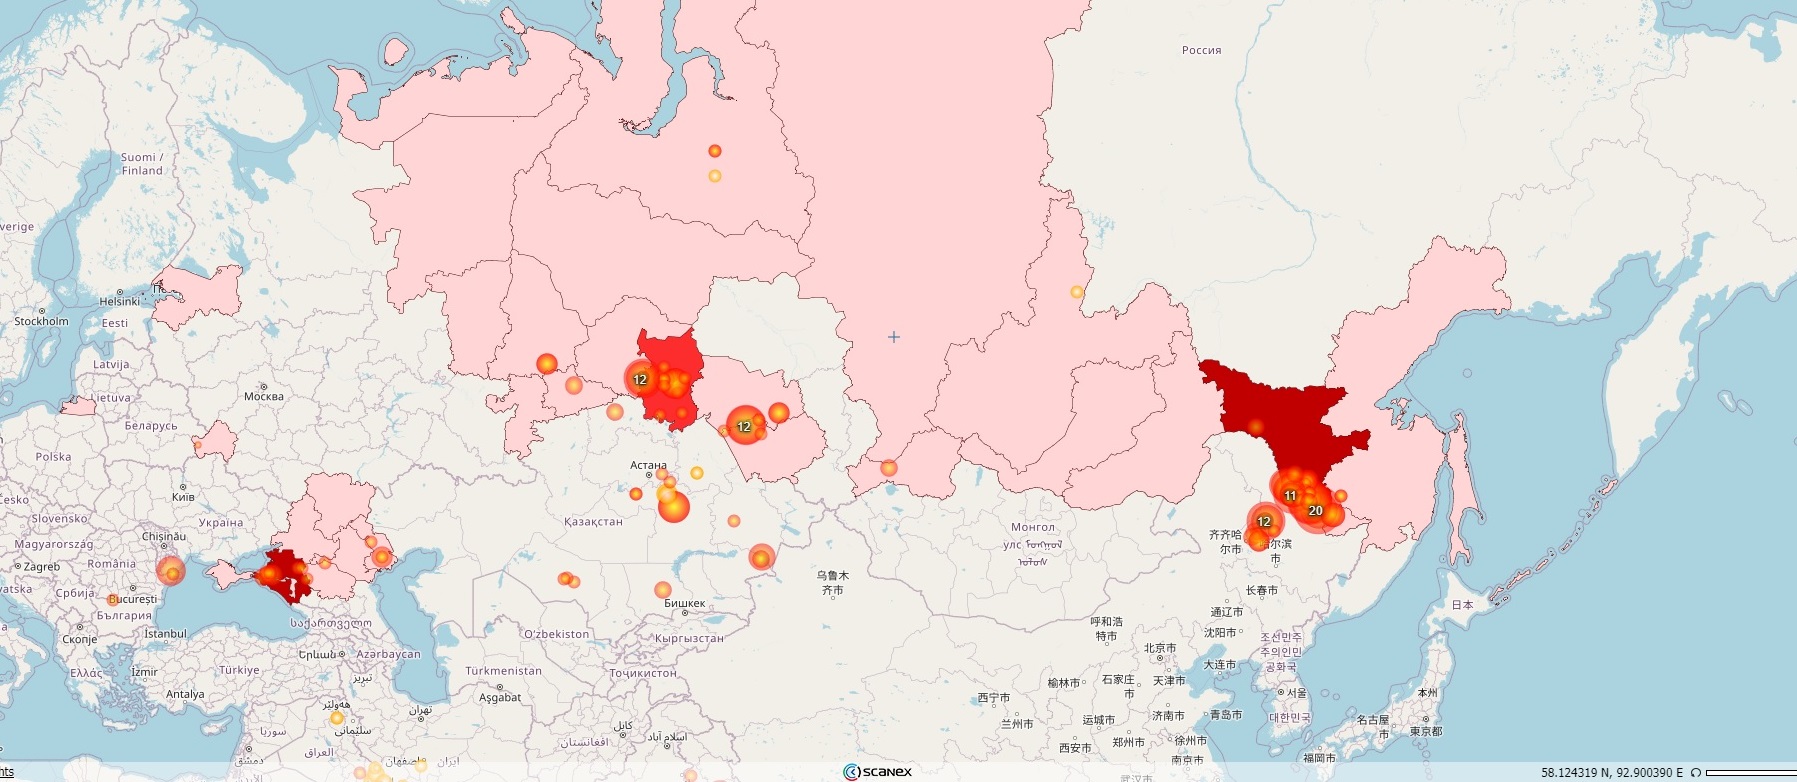 Максимум лесных пожаров в России спутники фиксируют в Амурской области